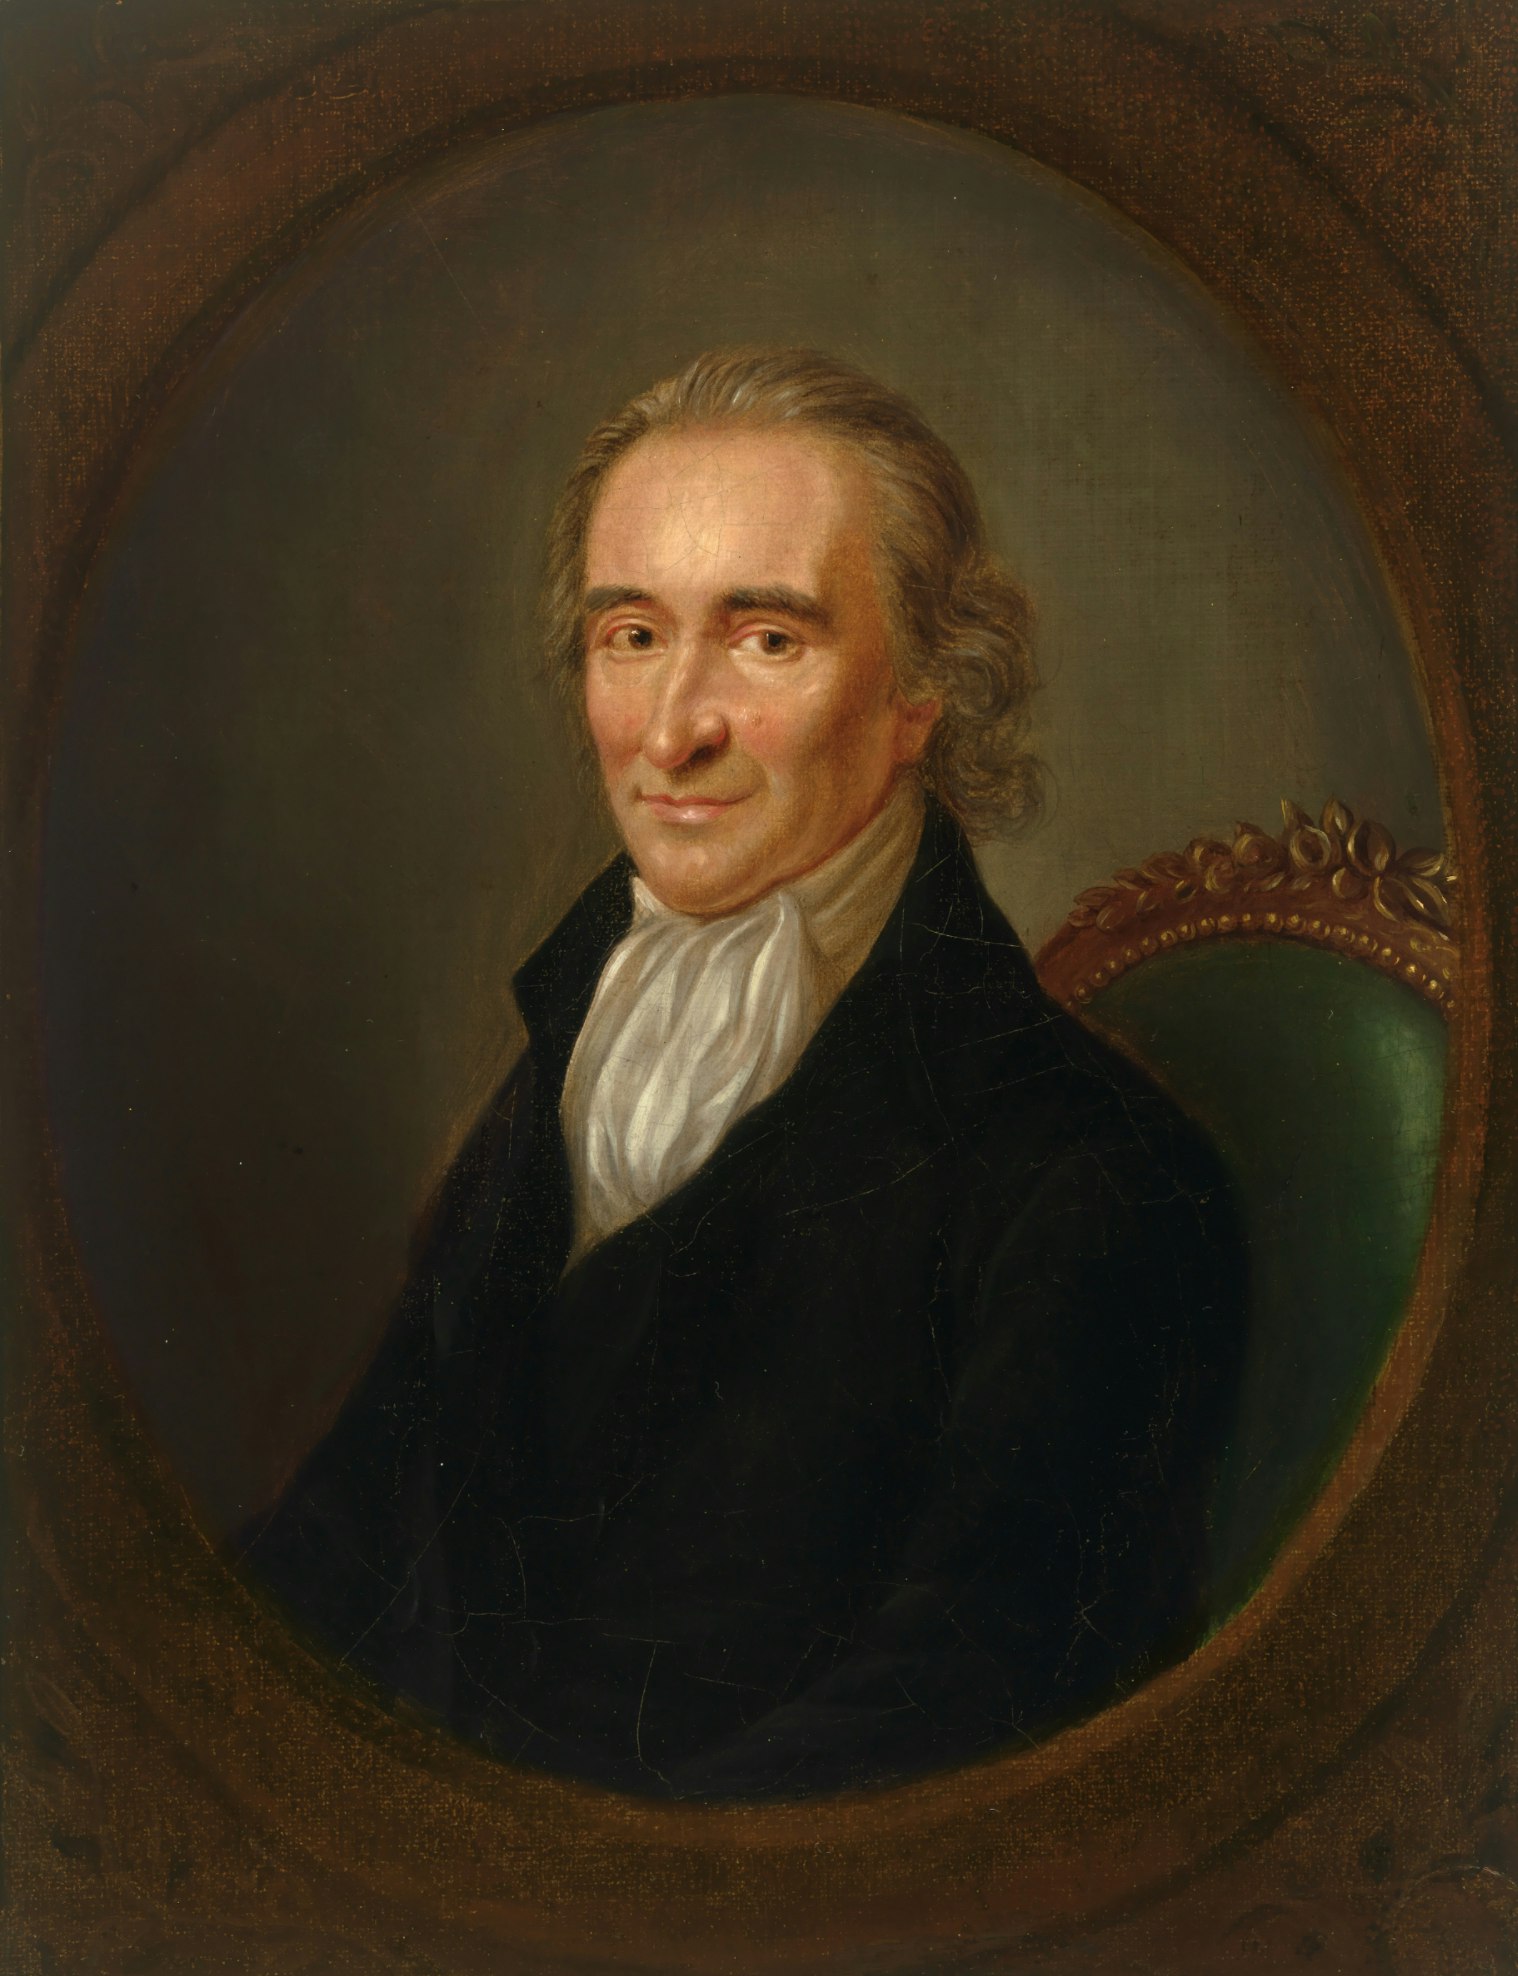 Thomas Paine painting